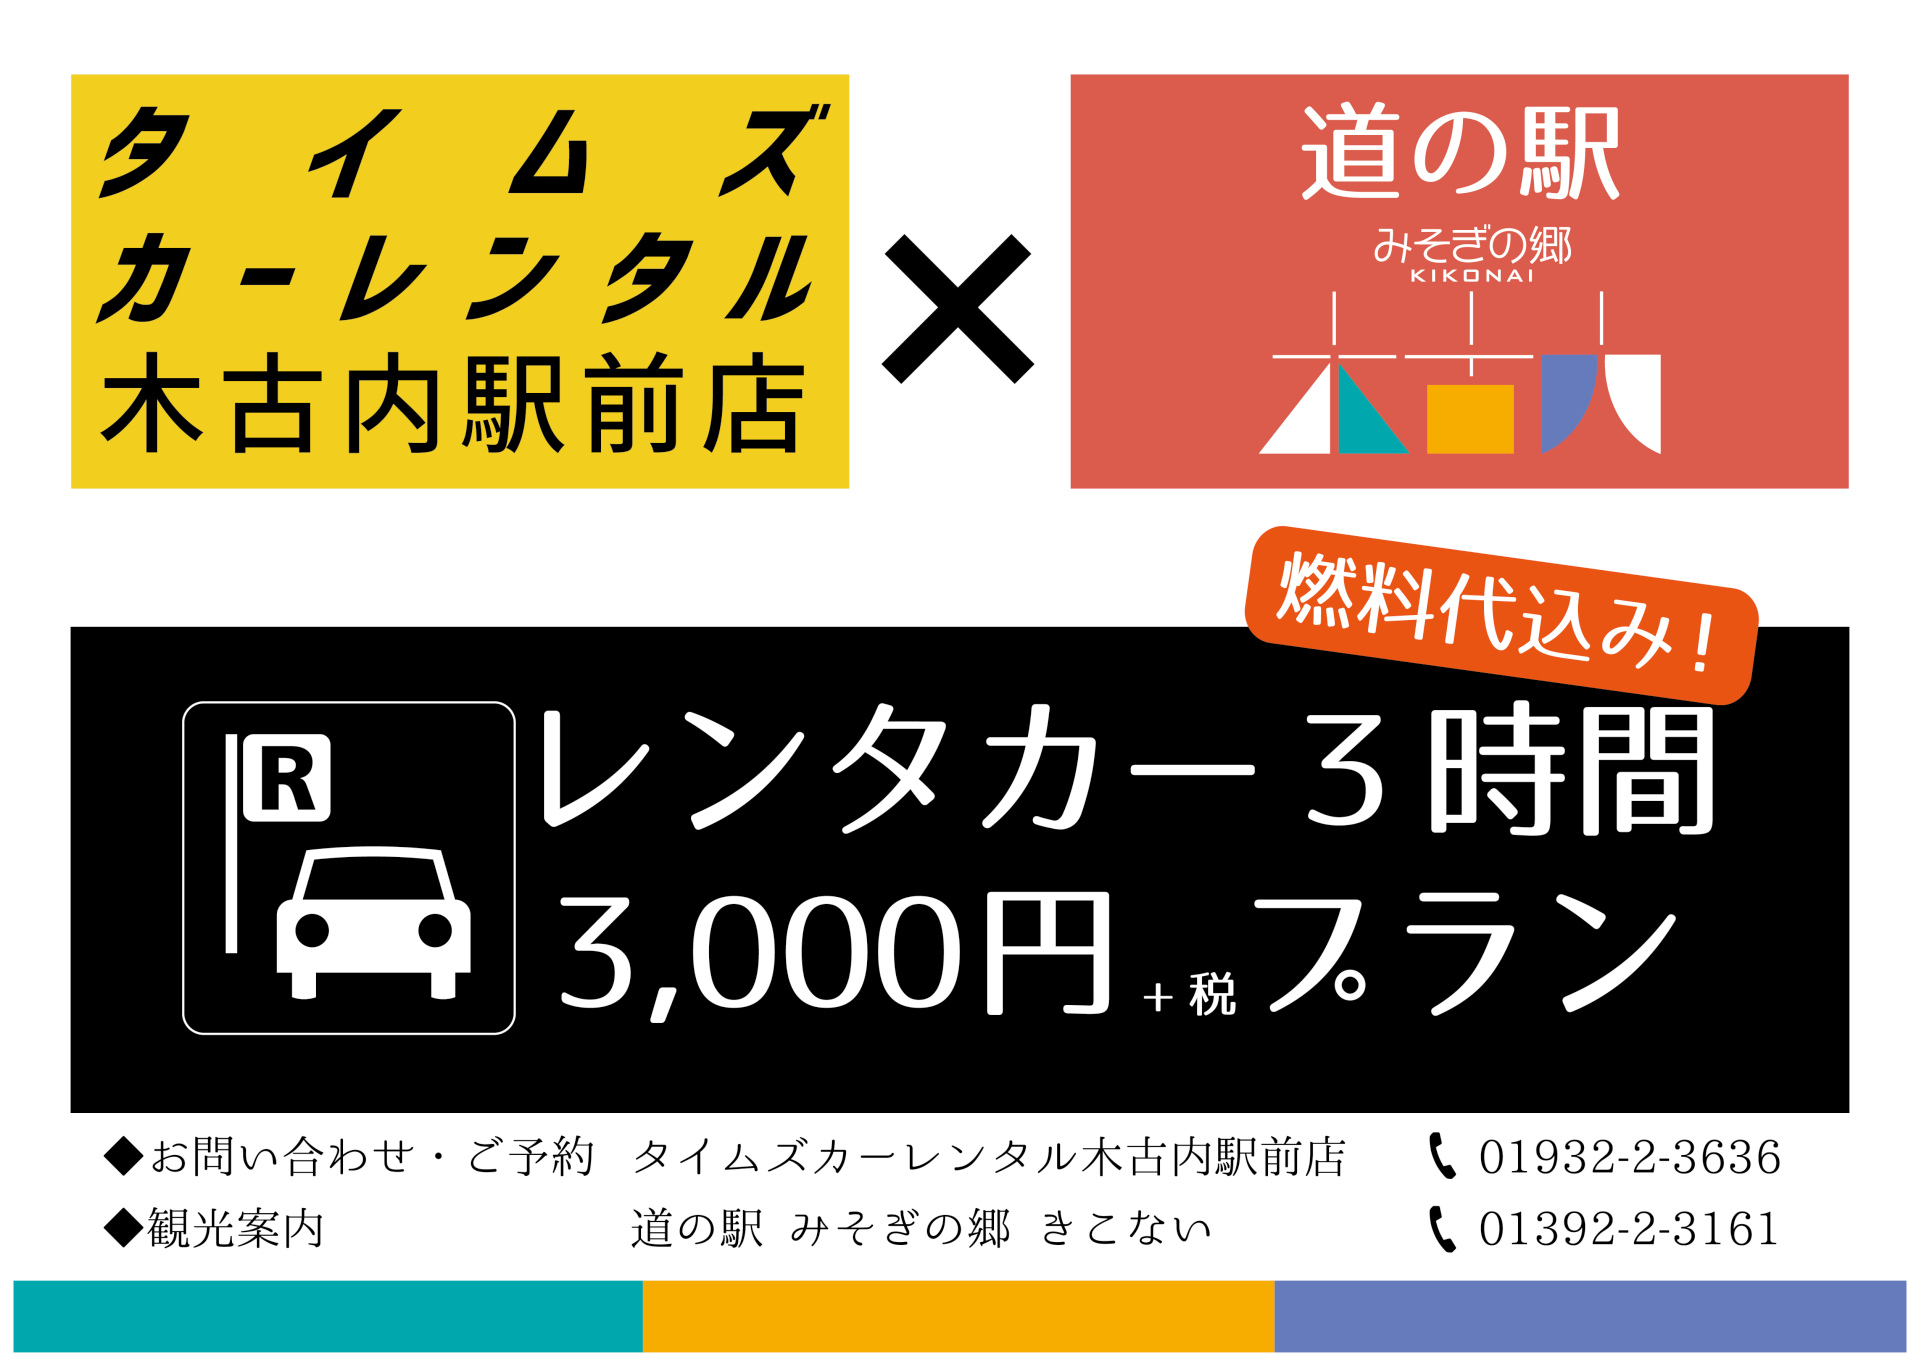 レンタカー3時間3,000円プラン 2017-2018シーズンの詳細決定！